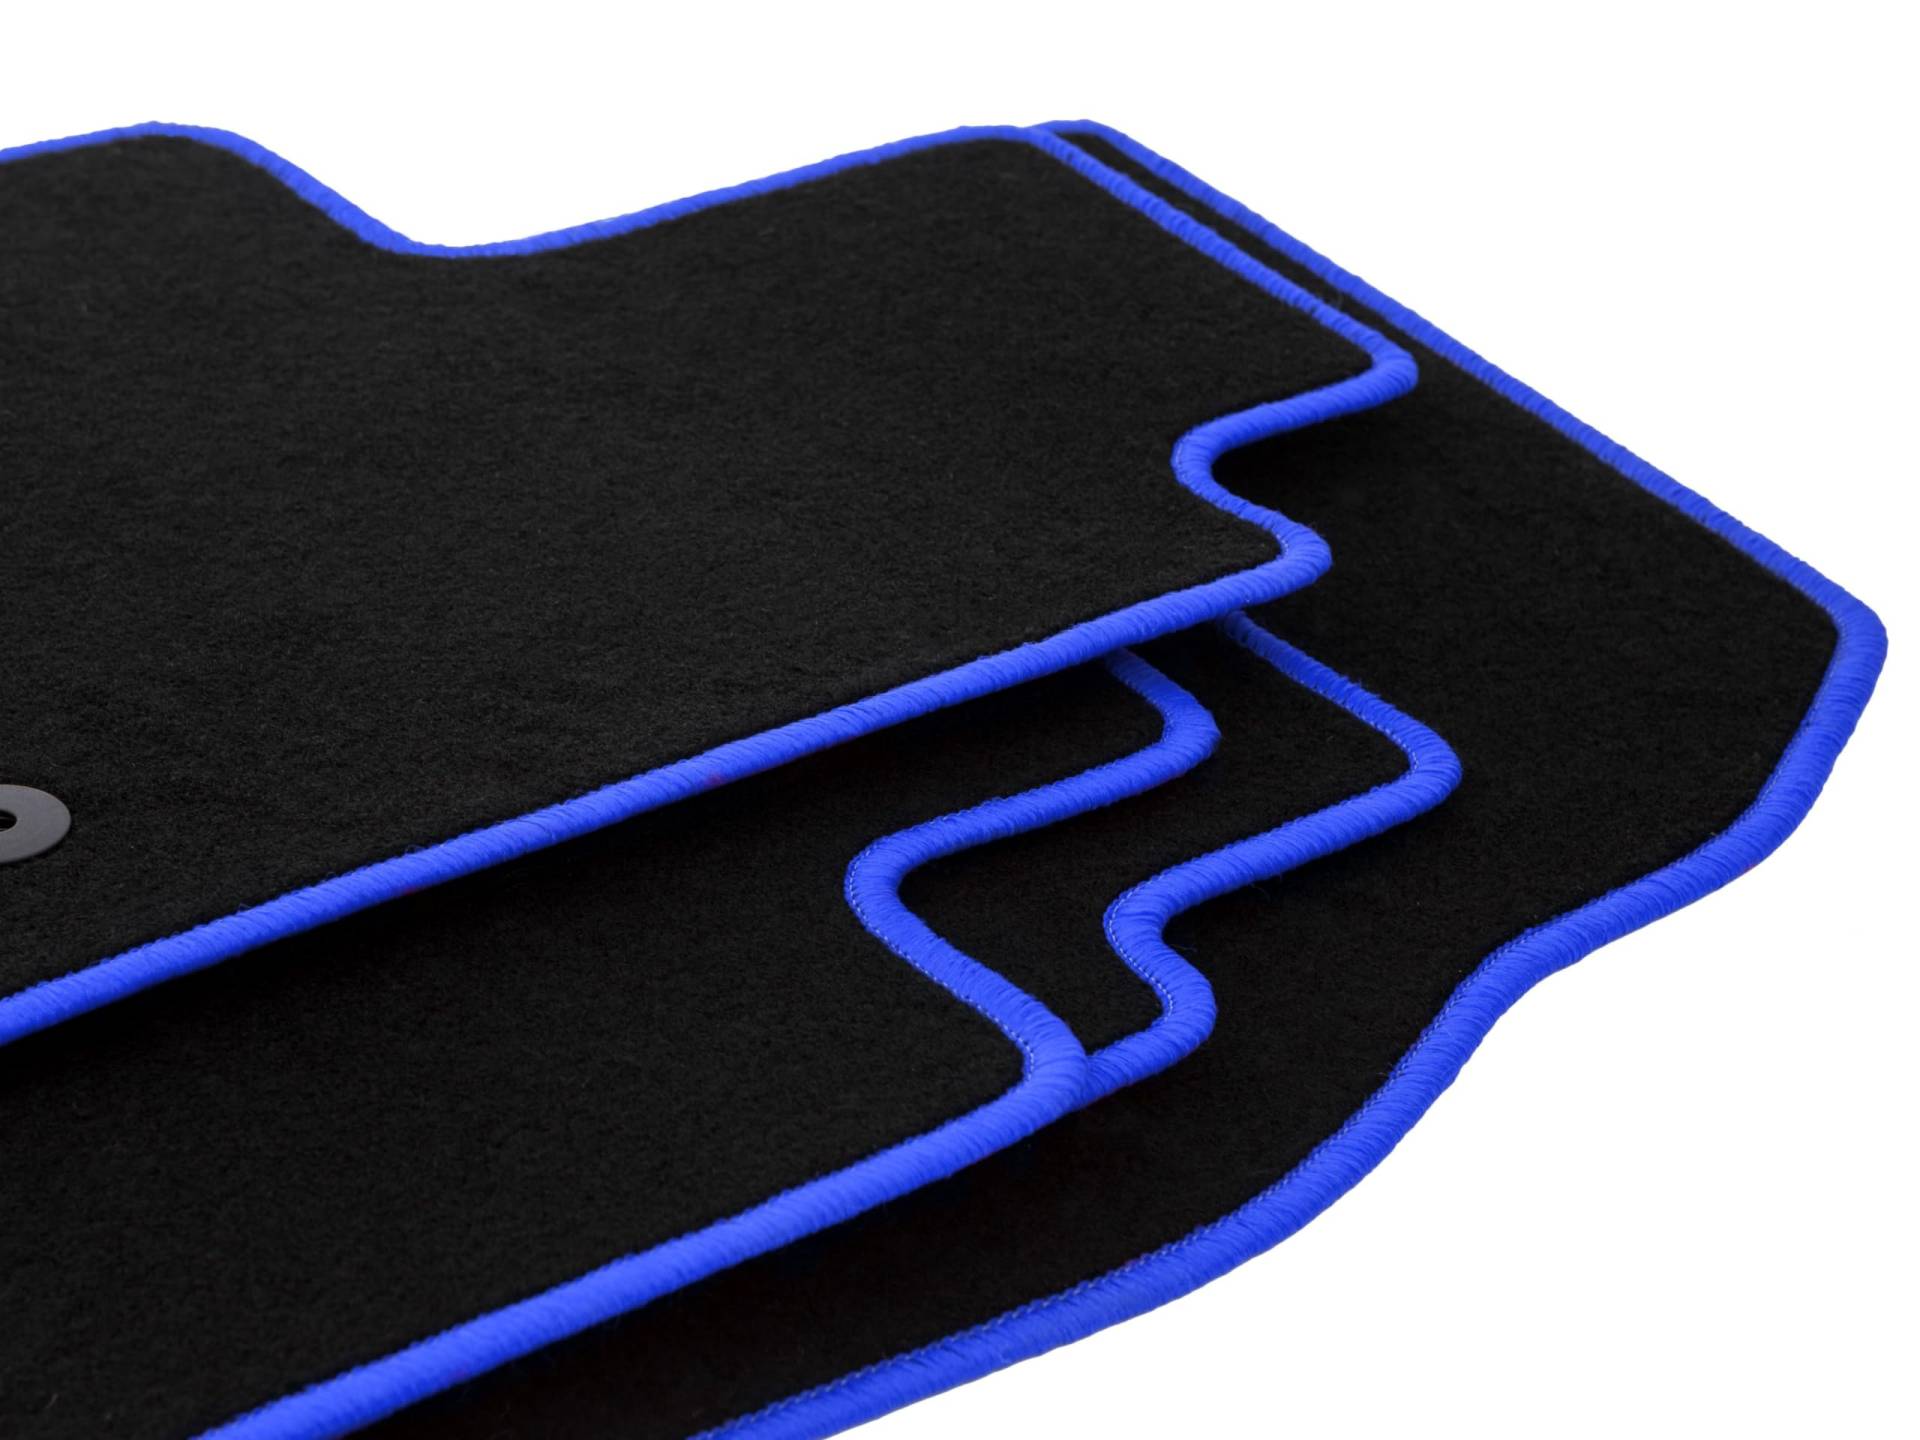 Wielganizator schwarz blau Fußmatten Velours Satz passend für: Peugeot 1007 (2004-2009) Minivan Autofußmatten-Set Velours Autoteppiche 4-teilig Autoteppiche Nadelfilz Matten passgenau von Wielganizator